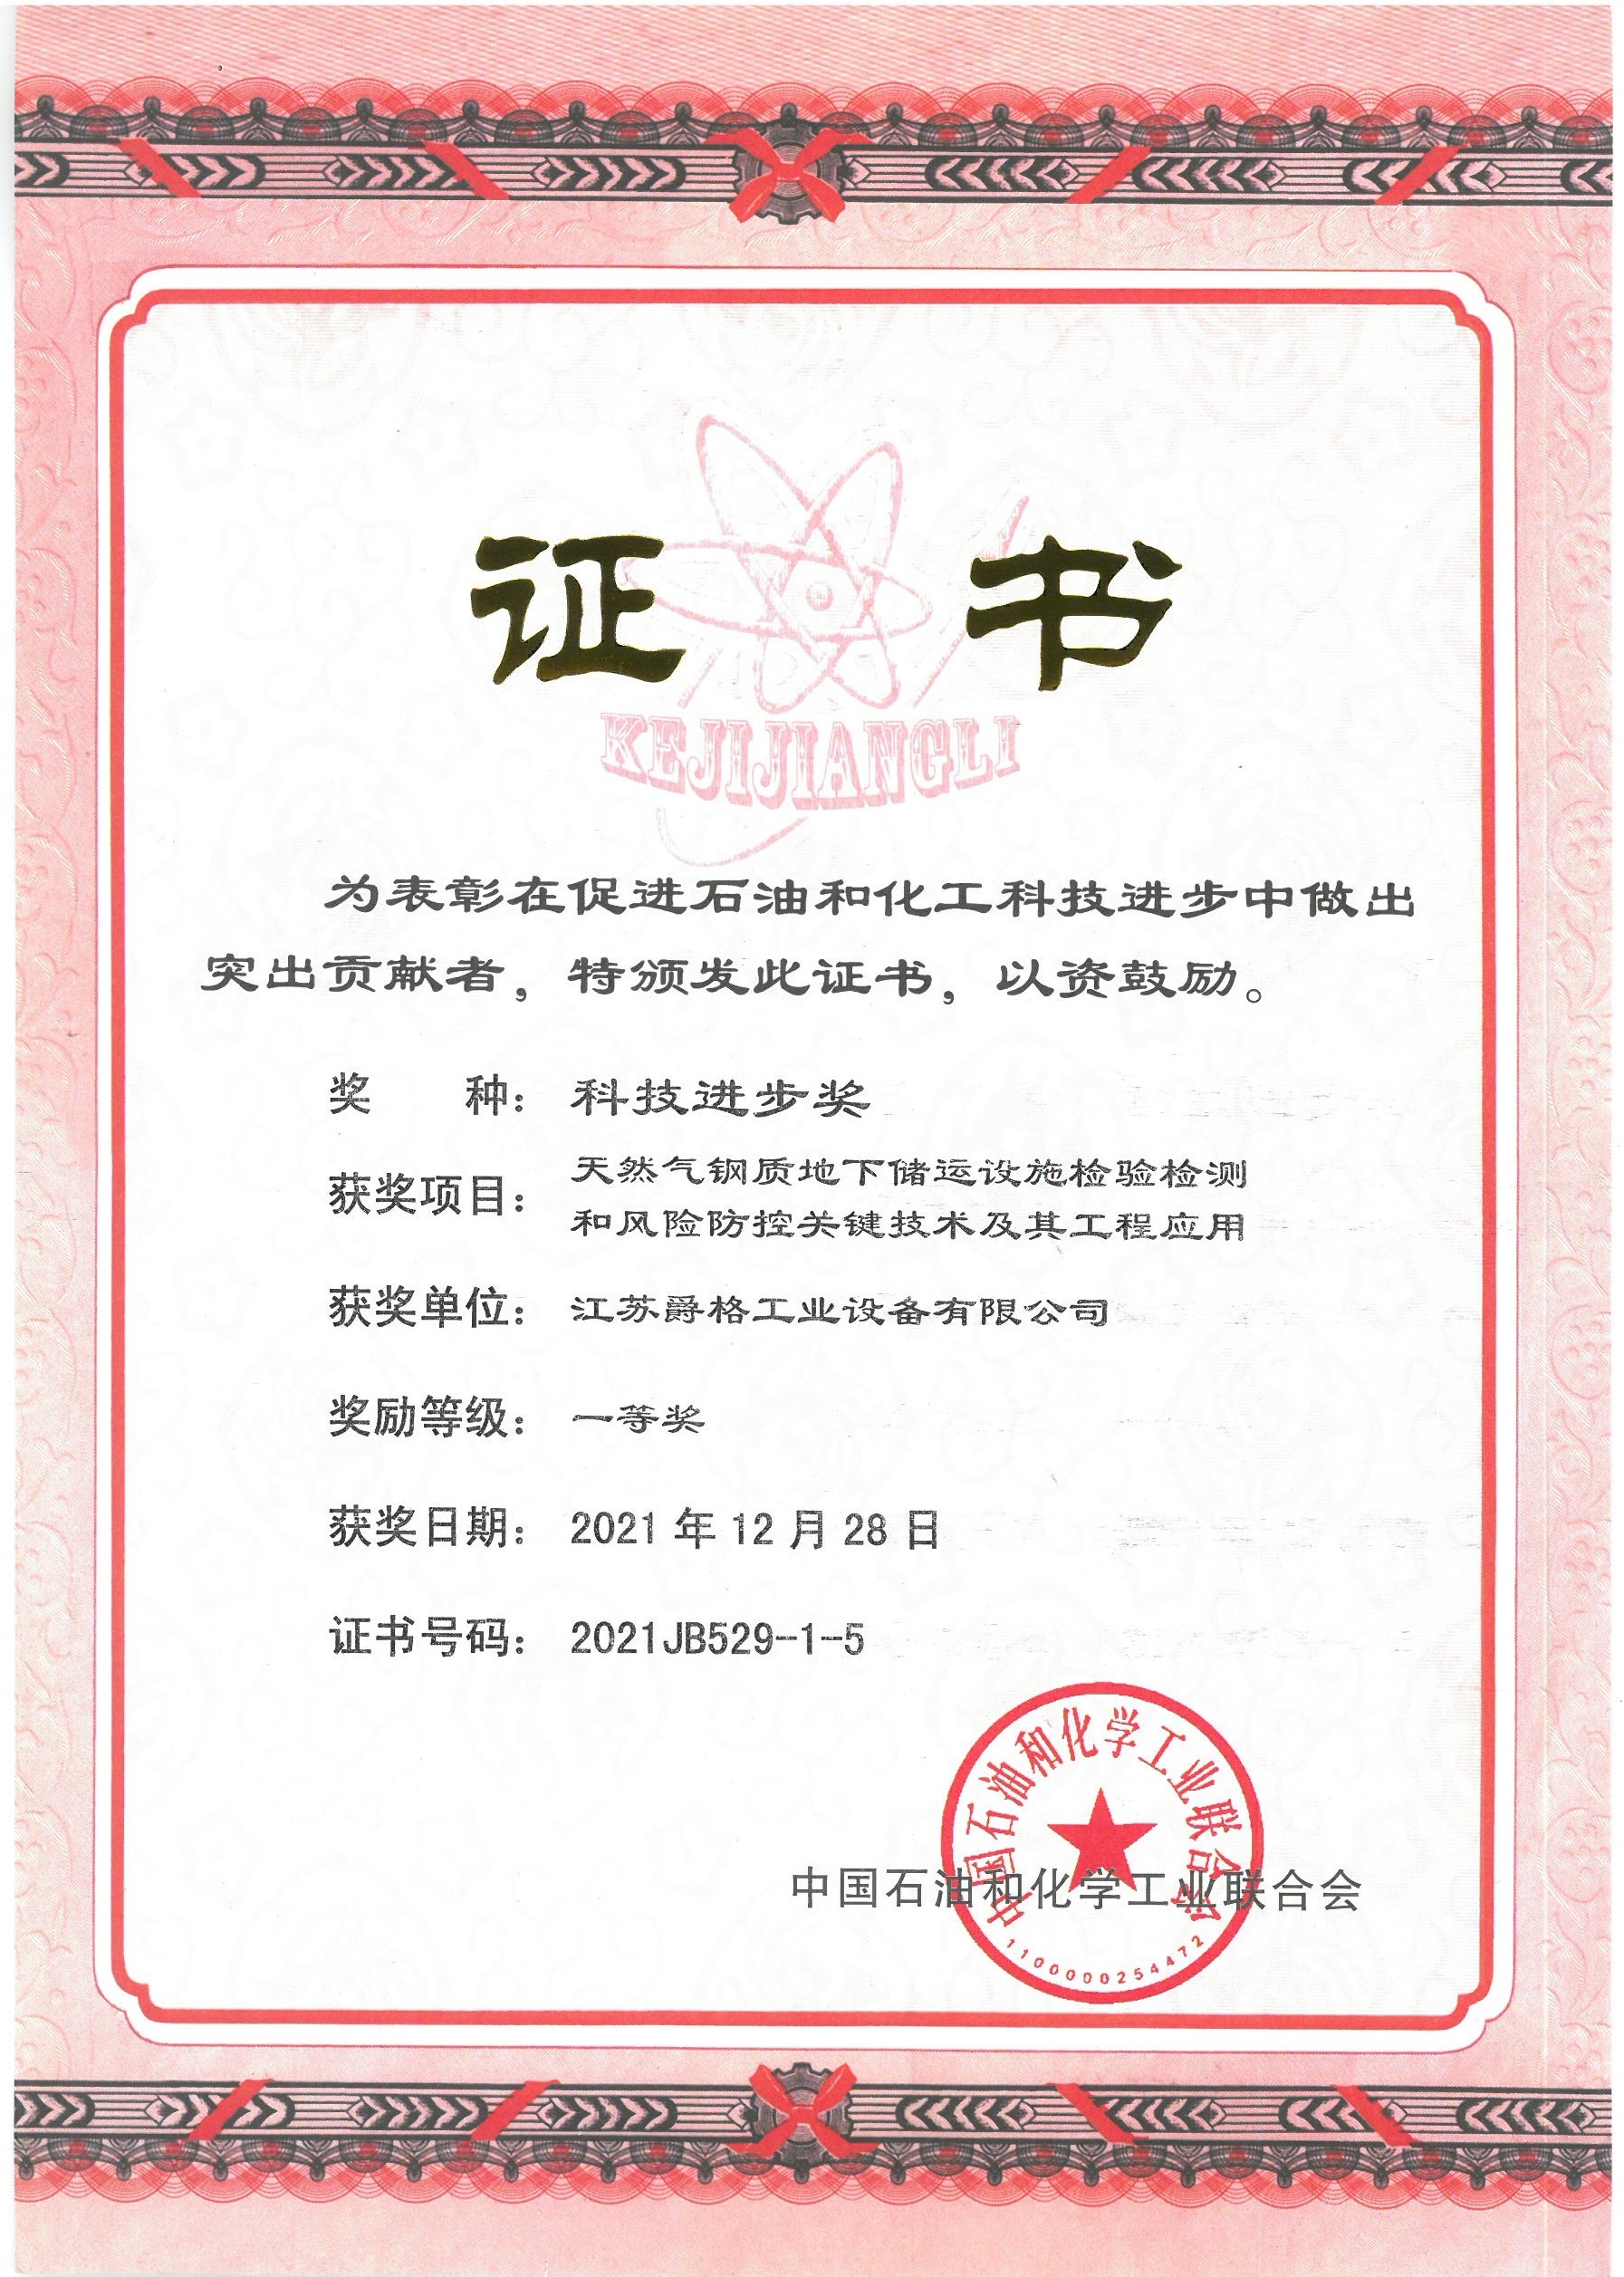 中国化工和工业联合会科技进步奖一等奖